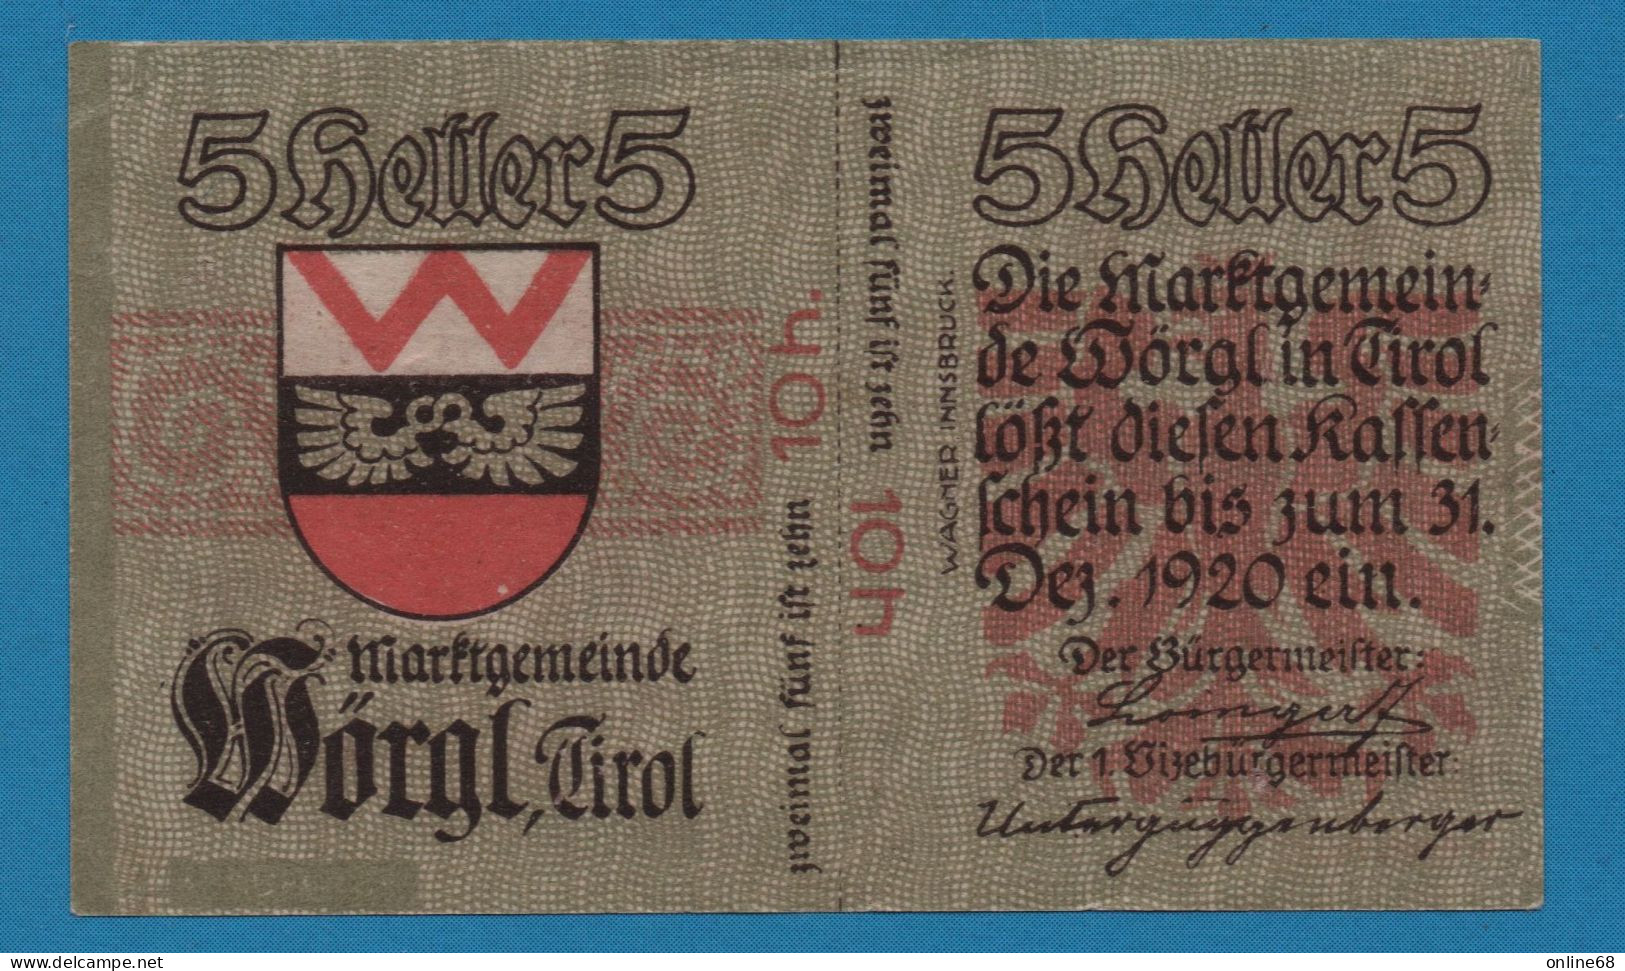 AUSTRIA Wörgl Tirol Marktgemeinde 10 HELLER No Date-31/12/1920 4. AUFLAGE NOTGELD Catalog # FS 1252 - Oesterreich